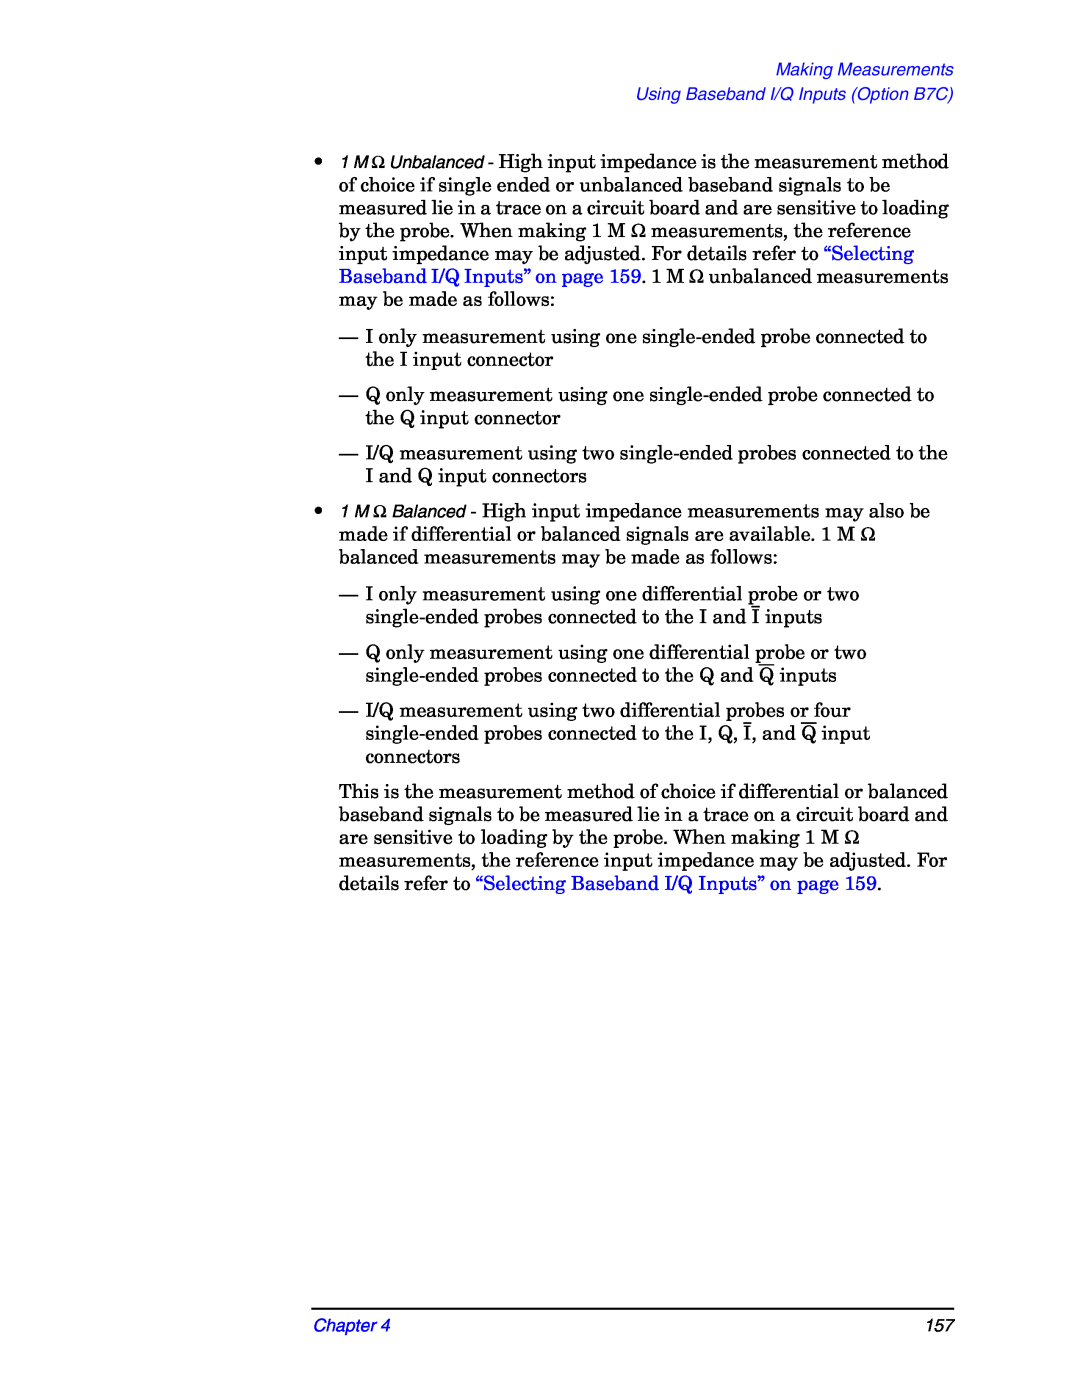 Agilent Technologies E4406A manual Making Measurements, Using Baseband I/Q Inputs Option B7C, Chapter 